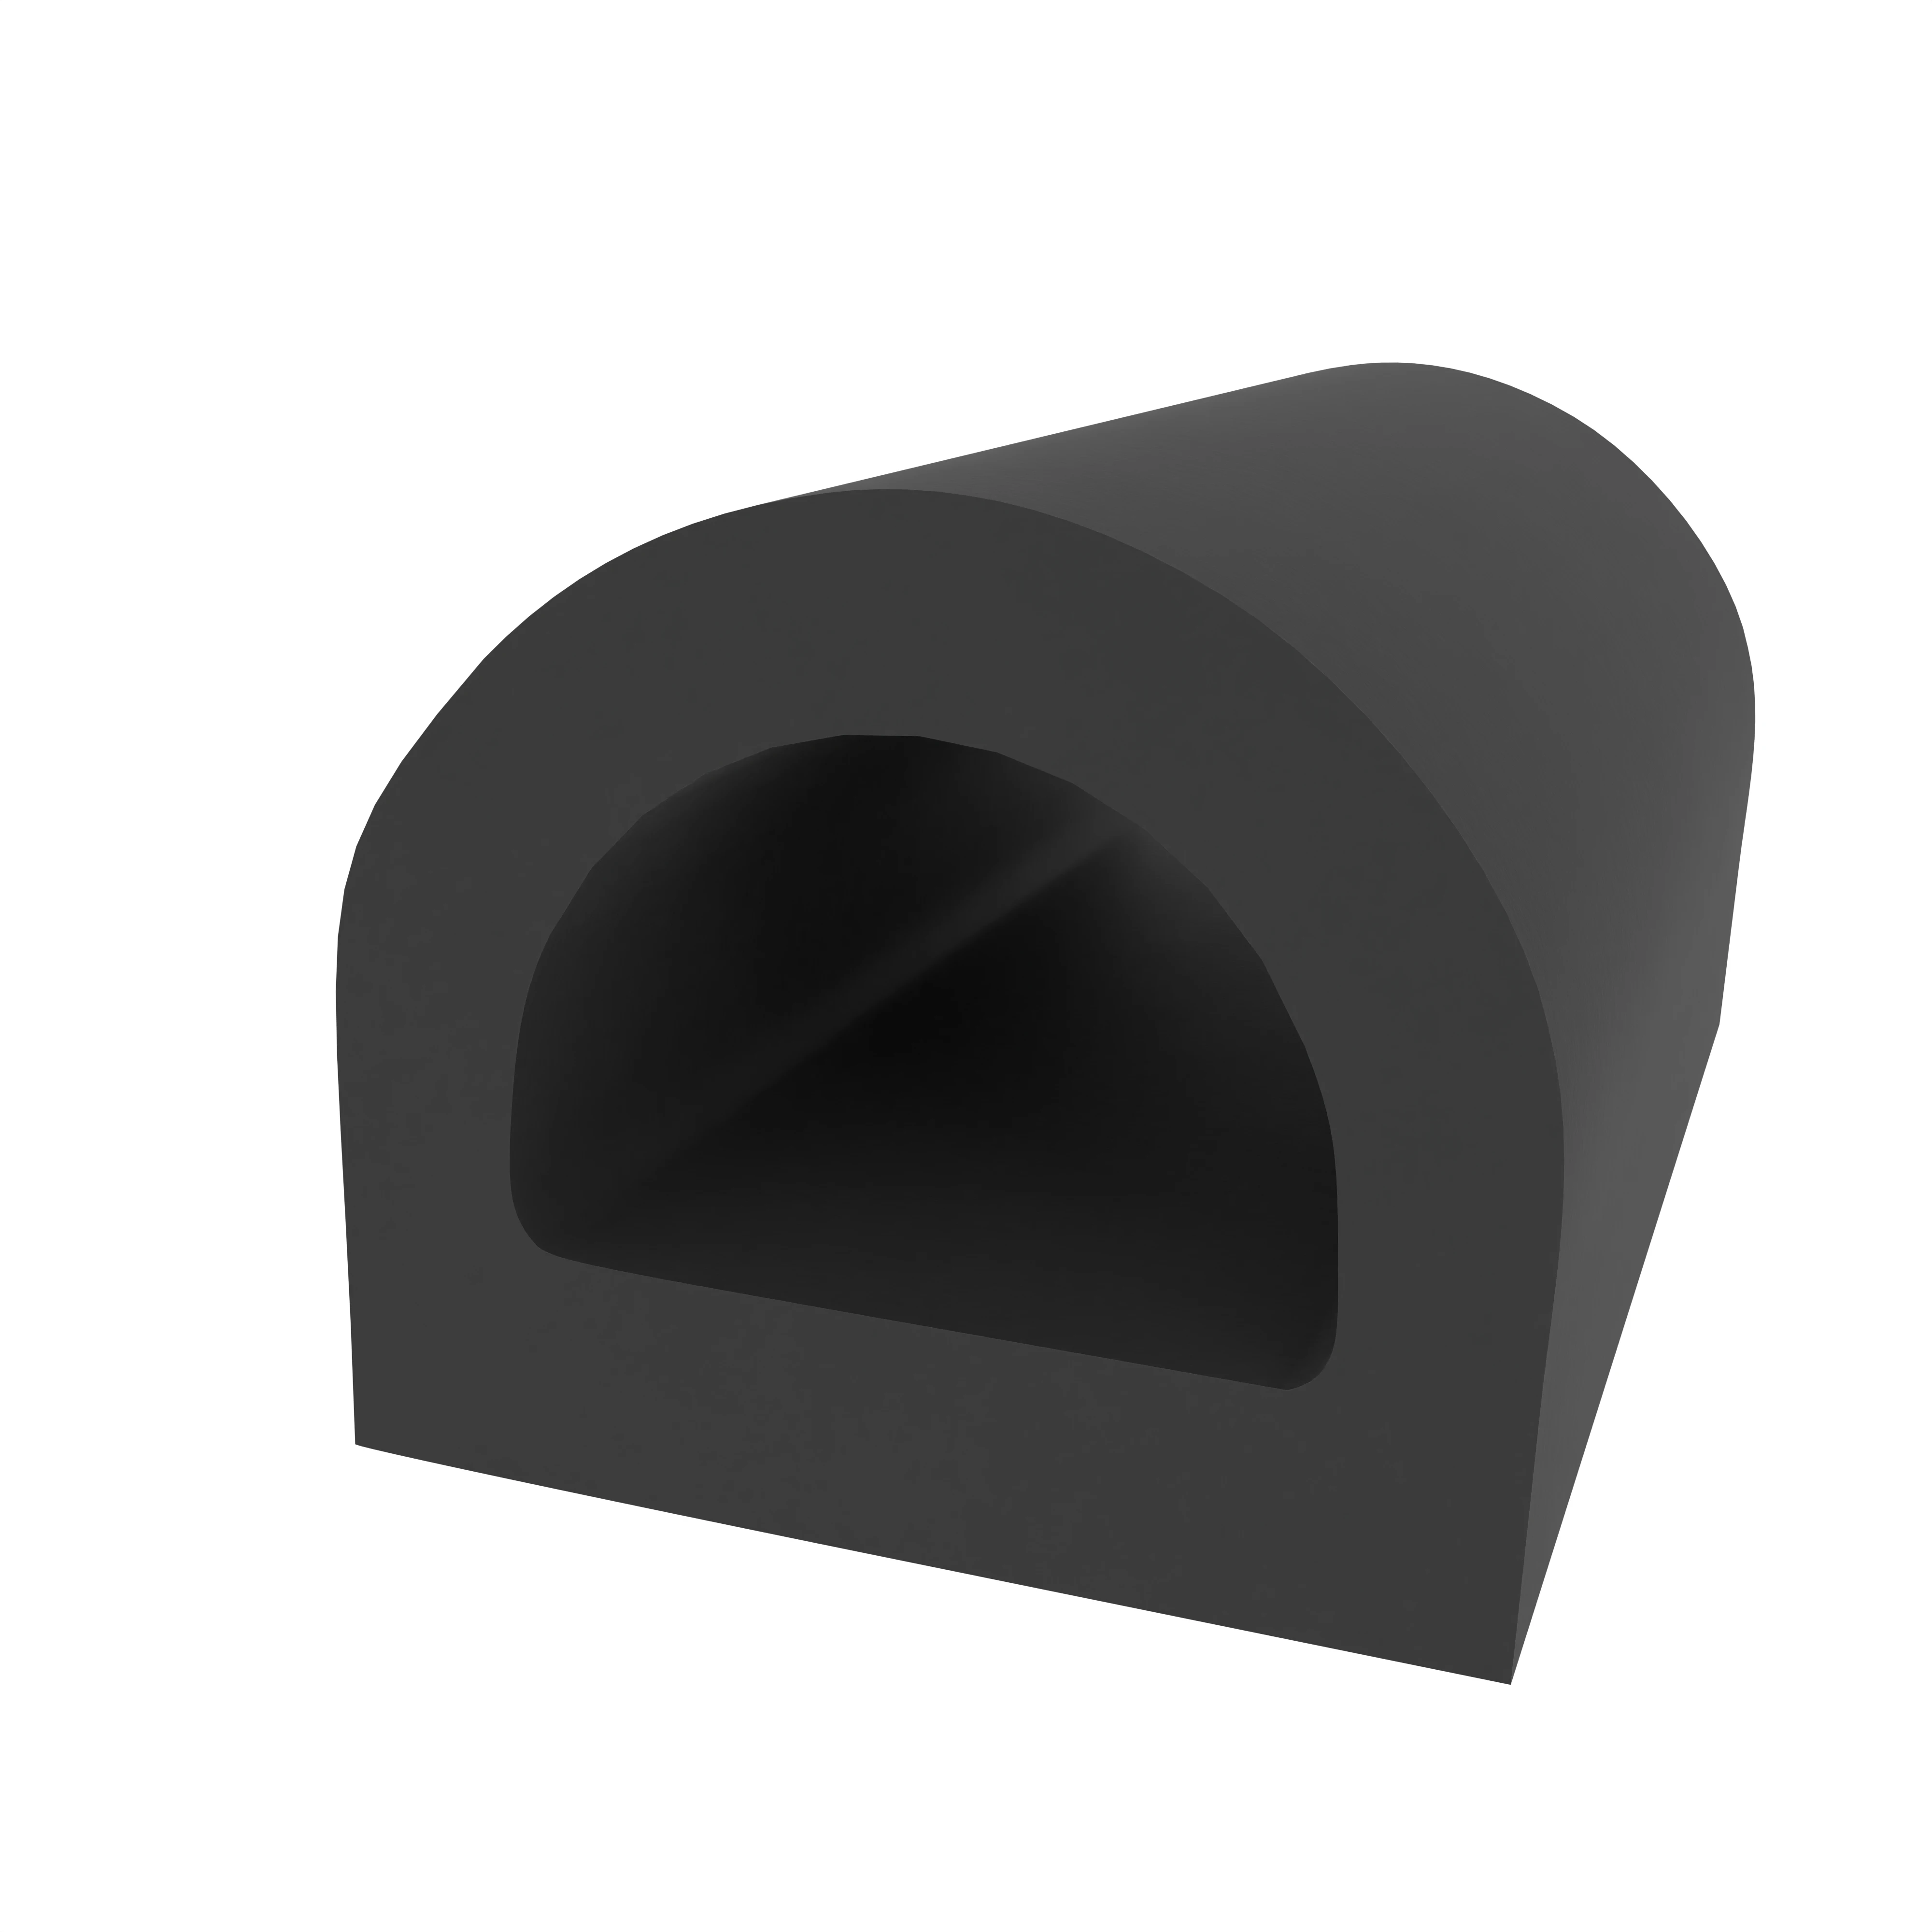 D-Profil 12 mm breit, für 8-11 mm Spalt in schwarz